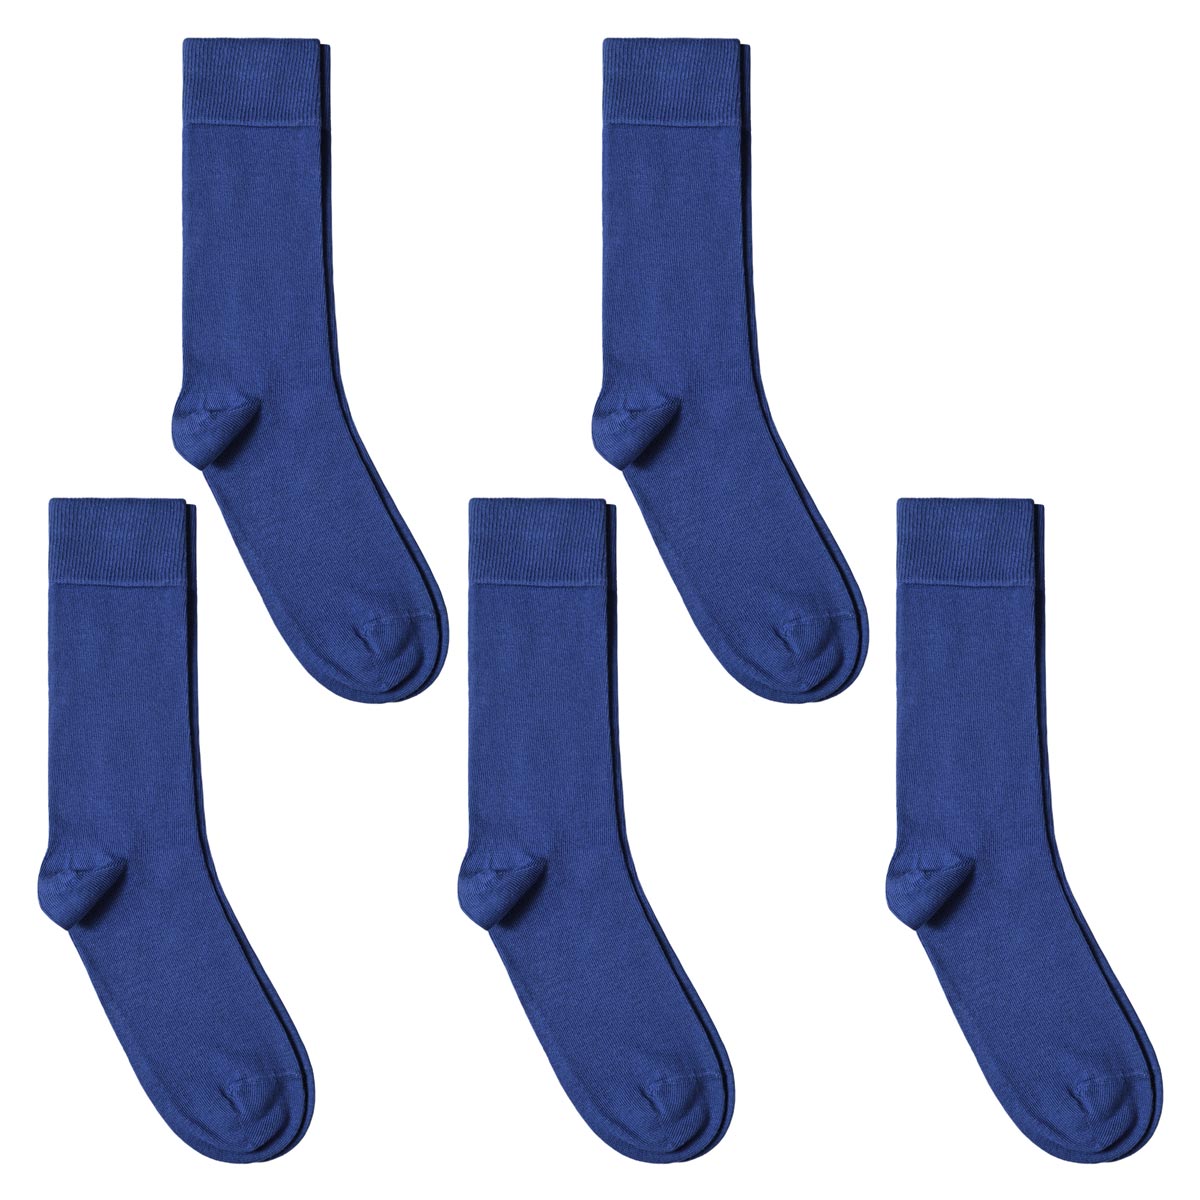 CH-00598_A12-1--_Lot-5-paires-de-chaussettes-homme-bleues-royales-unies